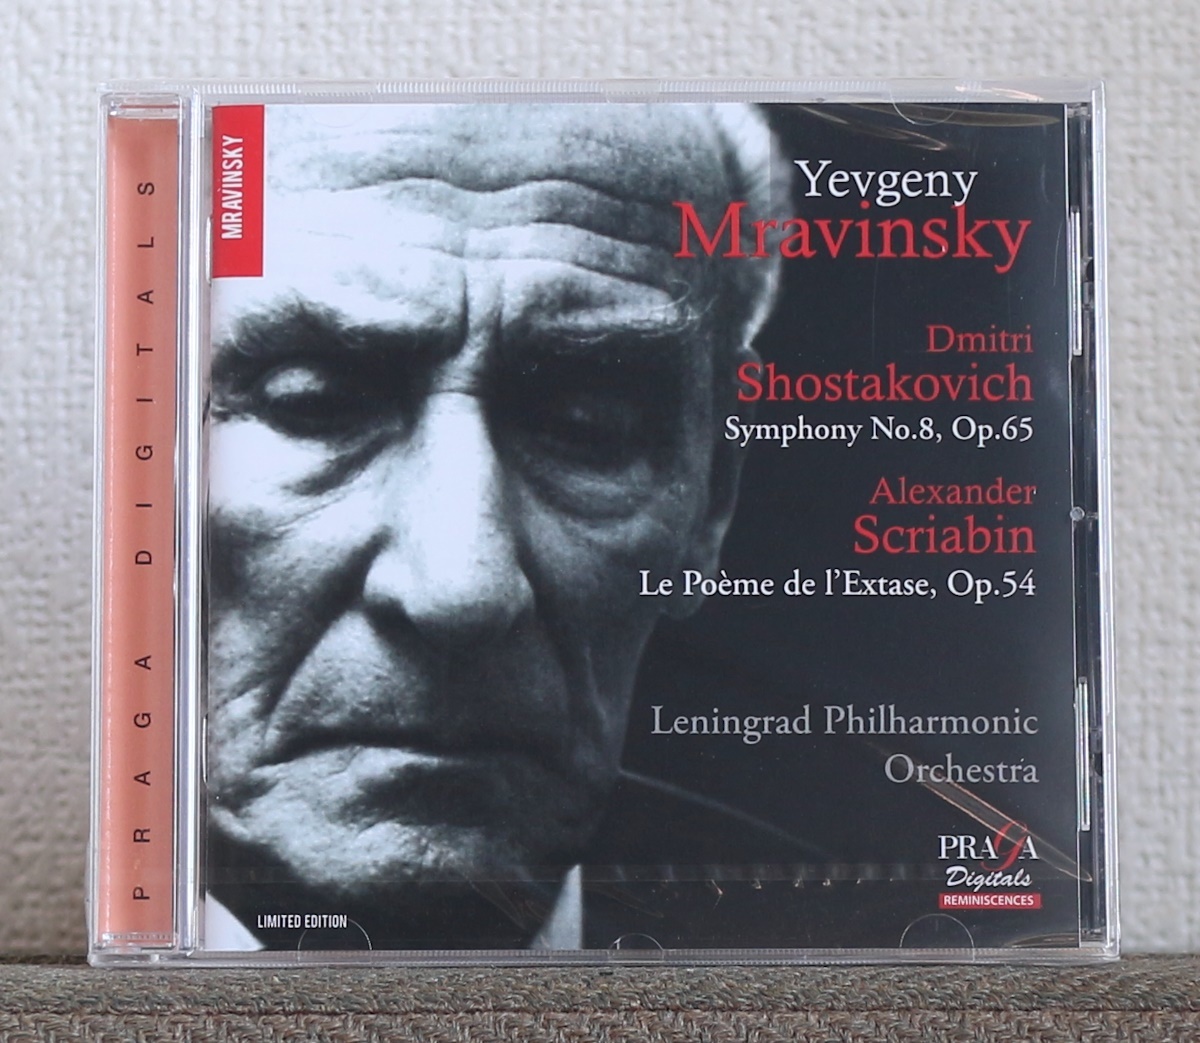 品薄/限定盤/CD/SACD/ムラヴィンスキー/ショスタコーヴィチ/交響曲第8番/スクリャービン/法悦の詩/Mravinsky/Shostakovich/Scriabin_画像1